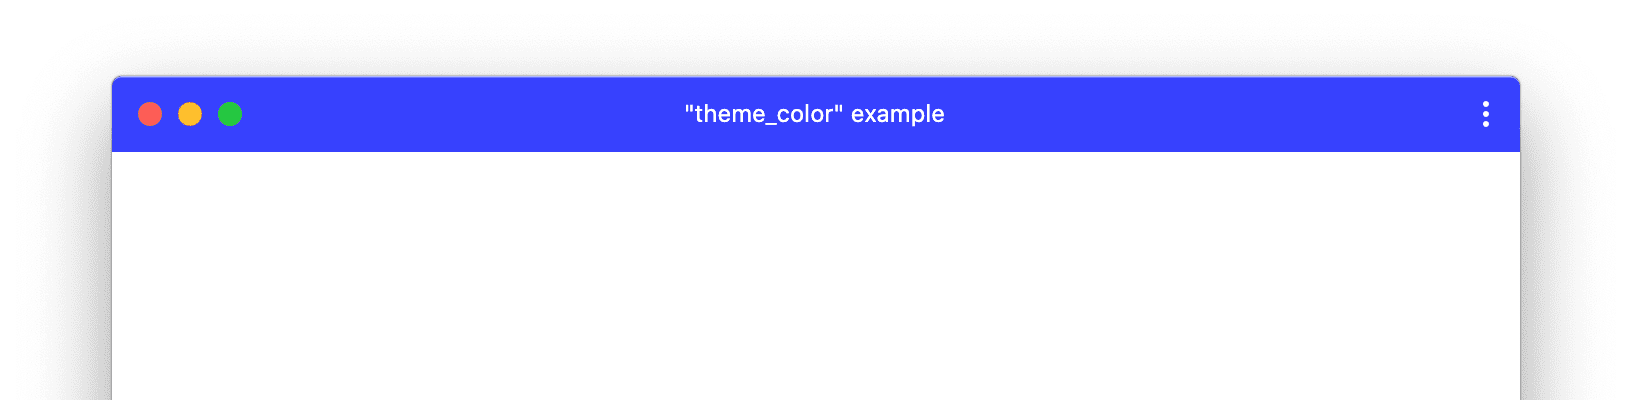 Пример окна PWA с пользовательским theme_color.